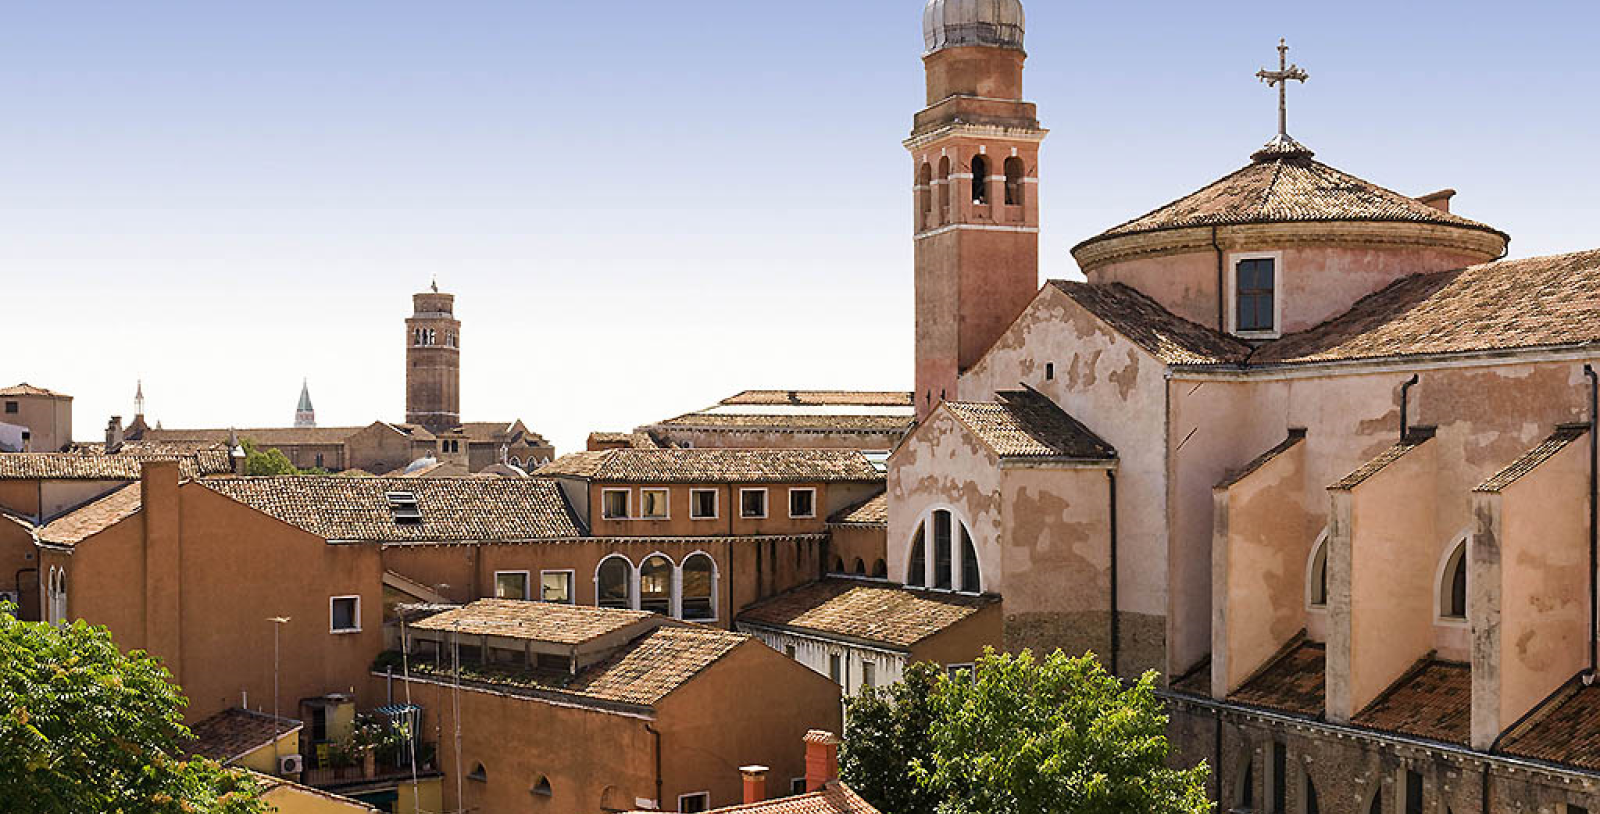 Explore the Scuola Grande di San Rocco and the Scuola Grande dei Carmini nearby.